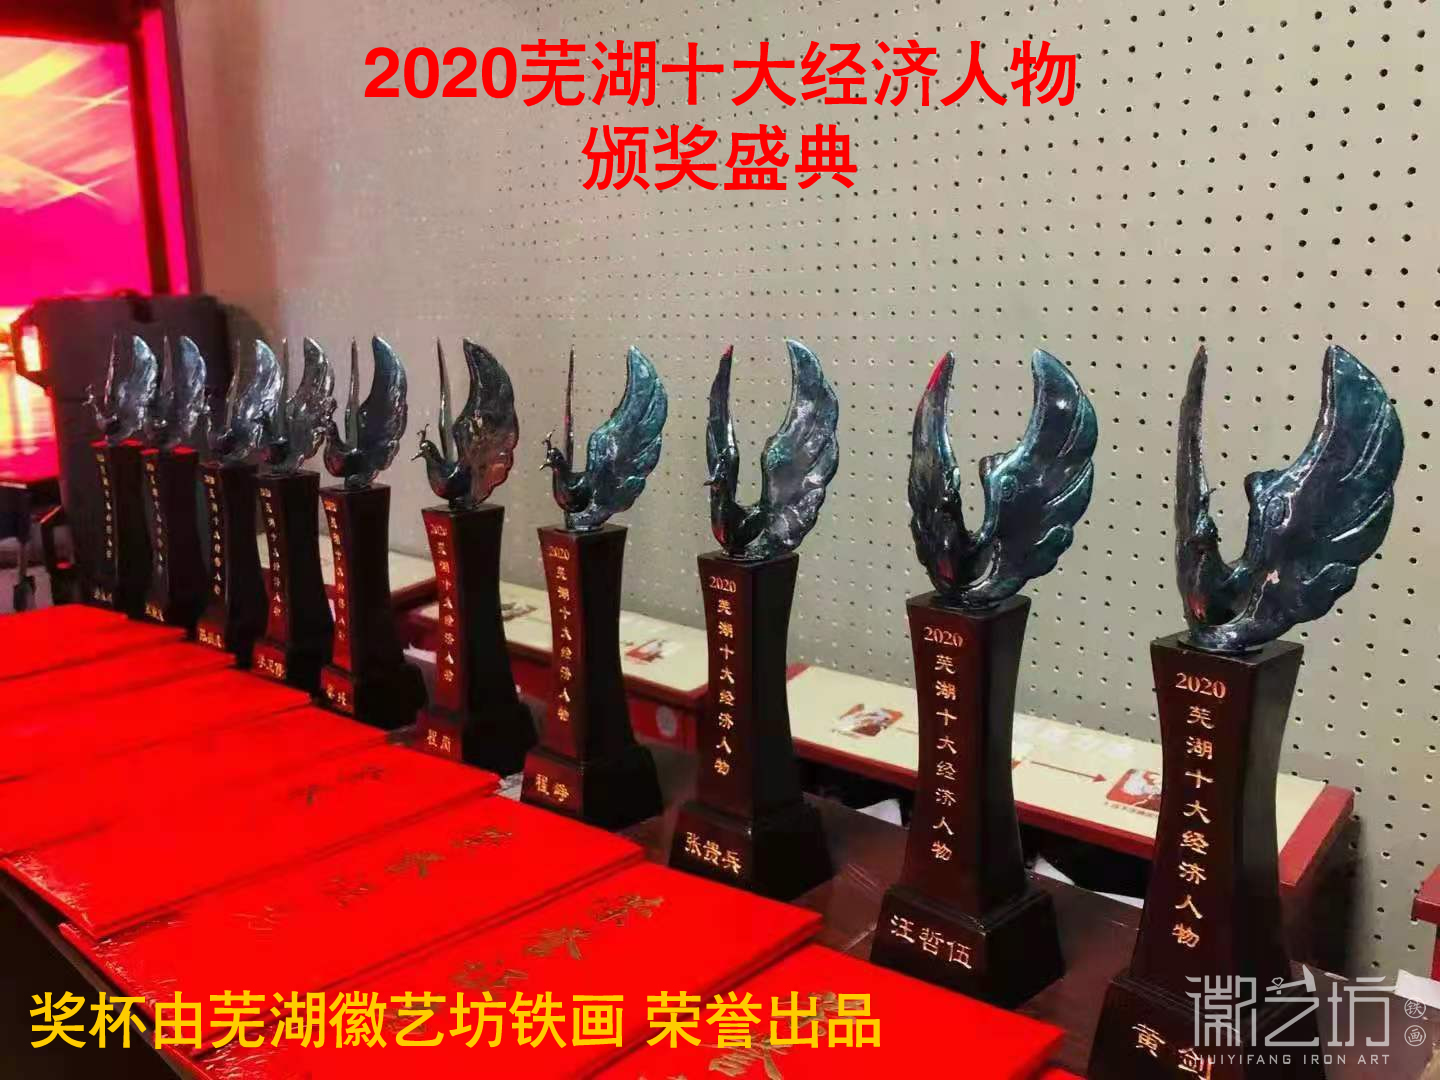 “2020年度芜湖十大经济人物”颁奖盛典奖杯由徽艺坊铁画荣誉出品